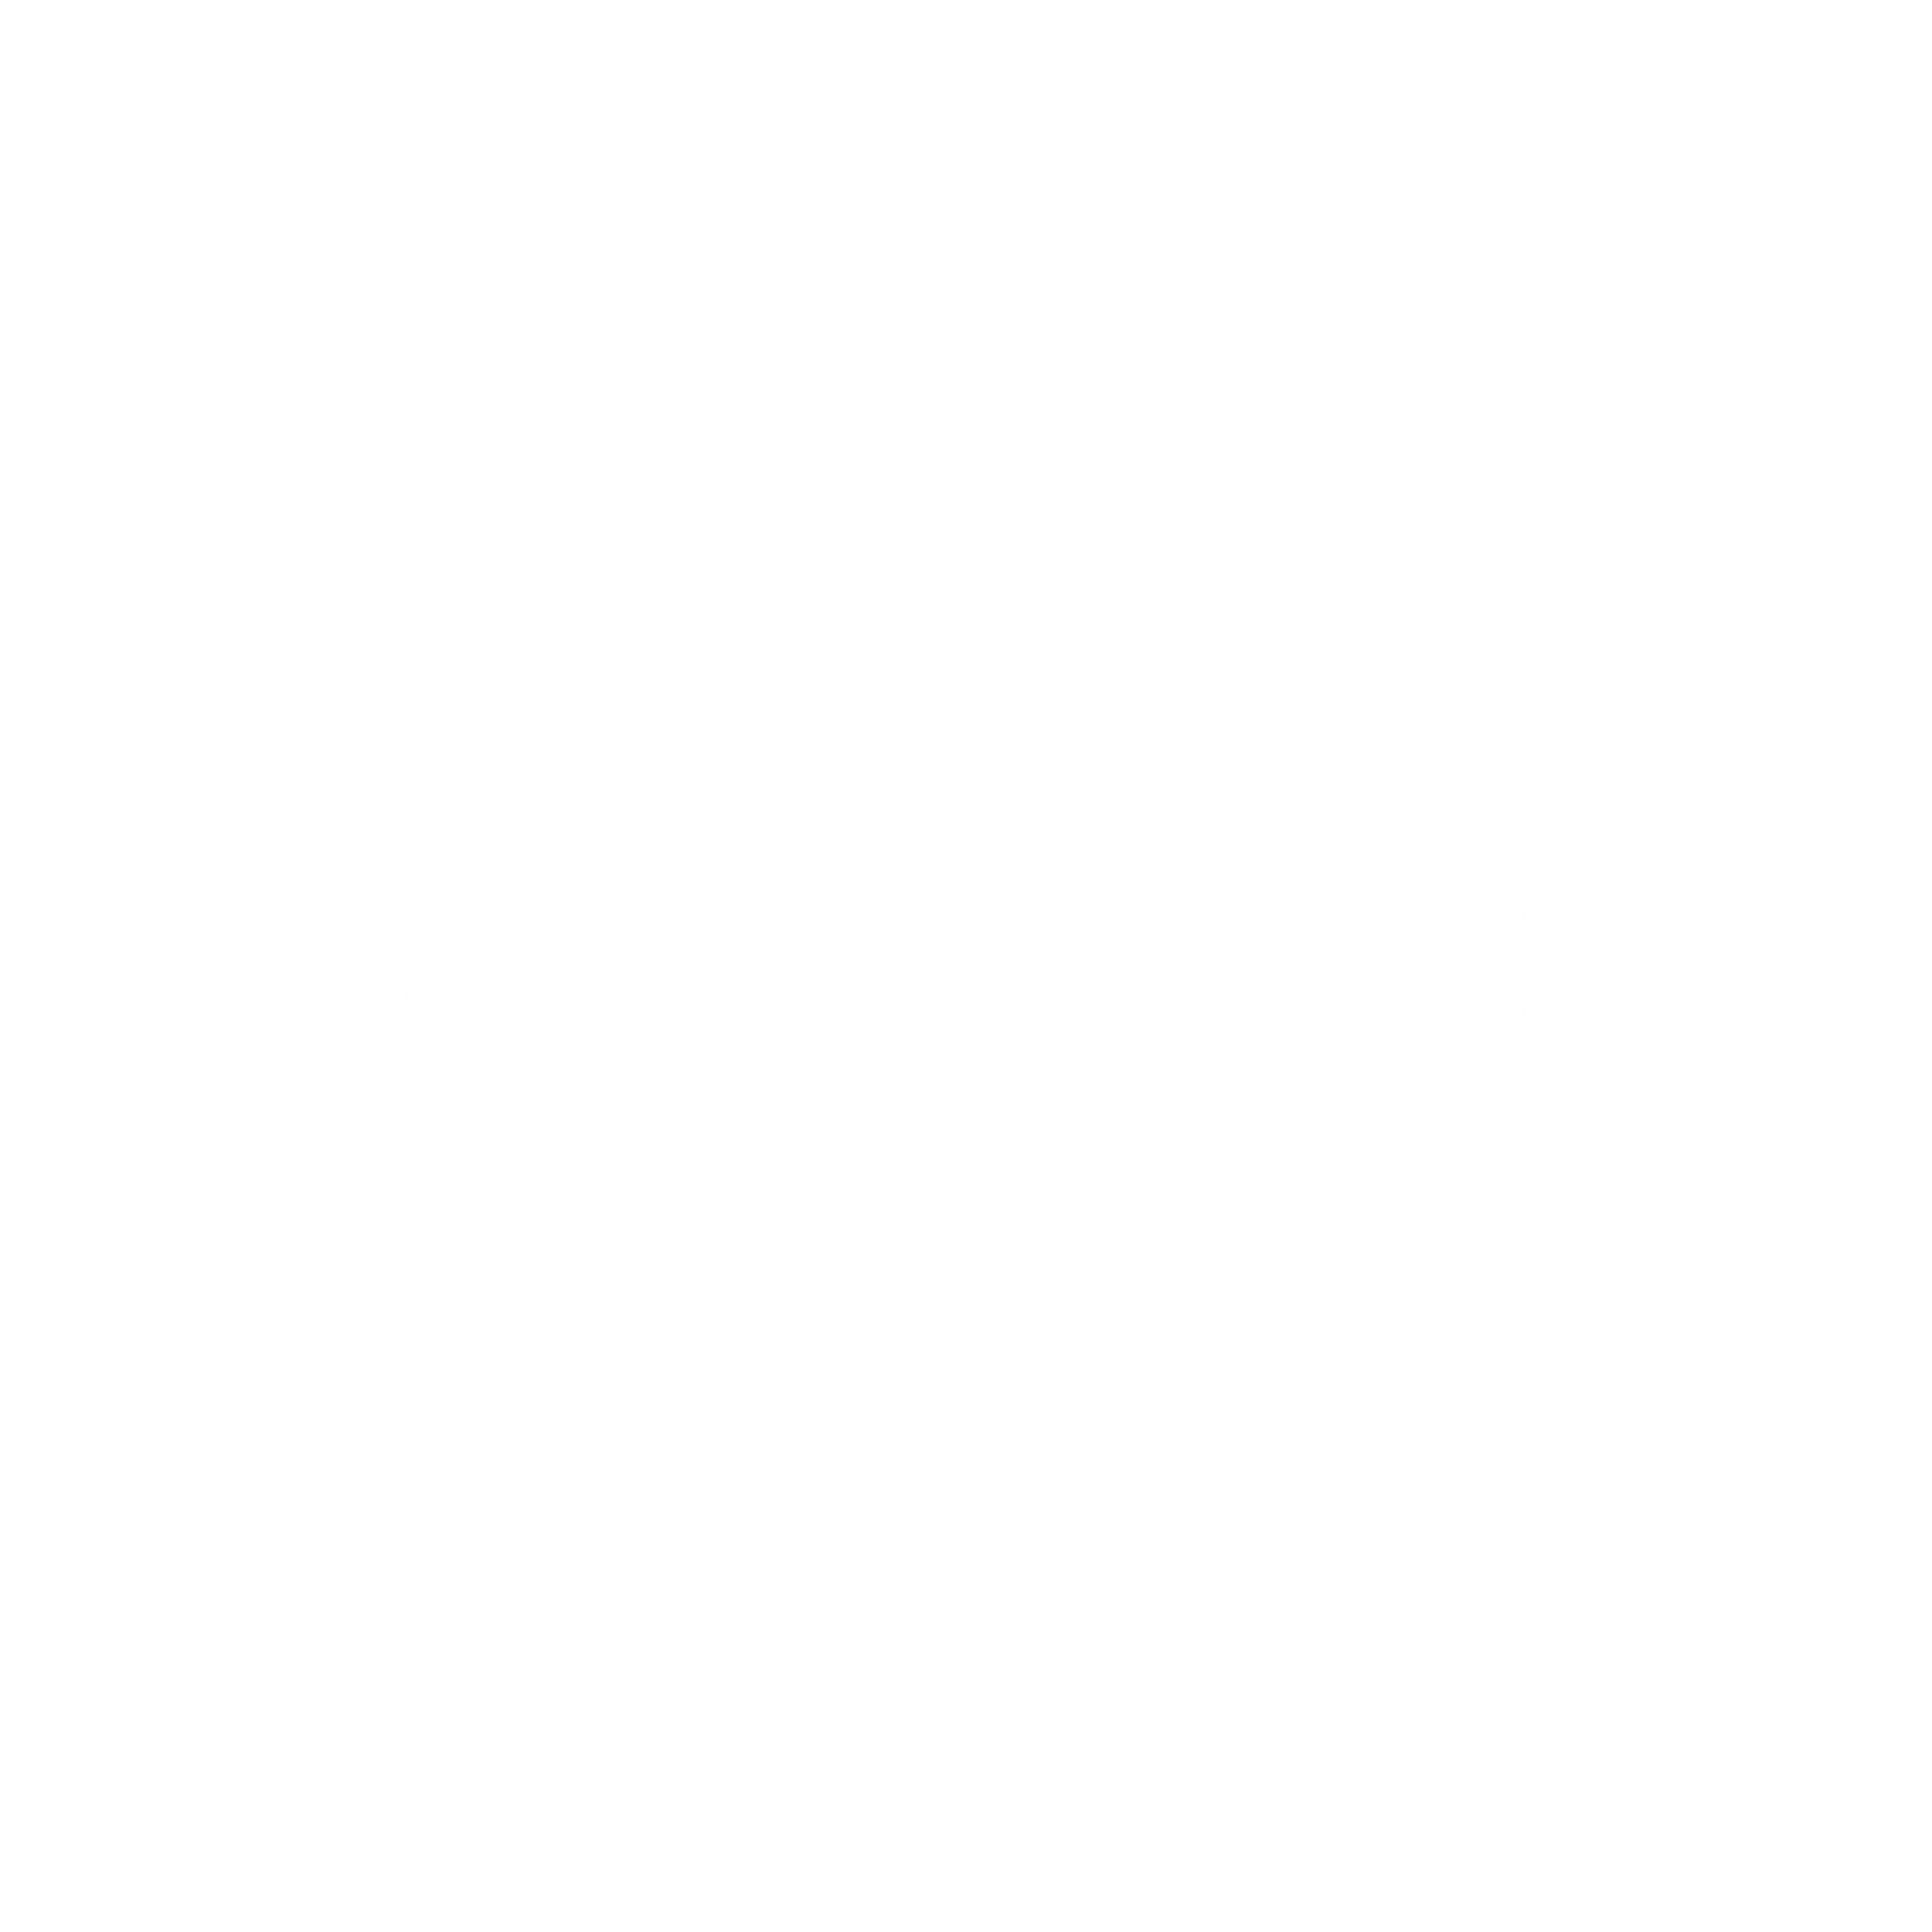 โลโก้ Skype สีดำและสีขาว PNG ภาพคุณภาพสูง